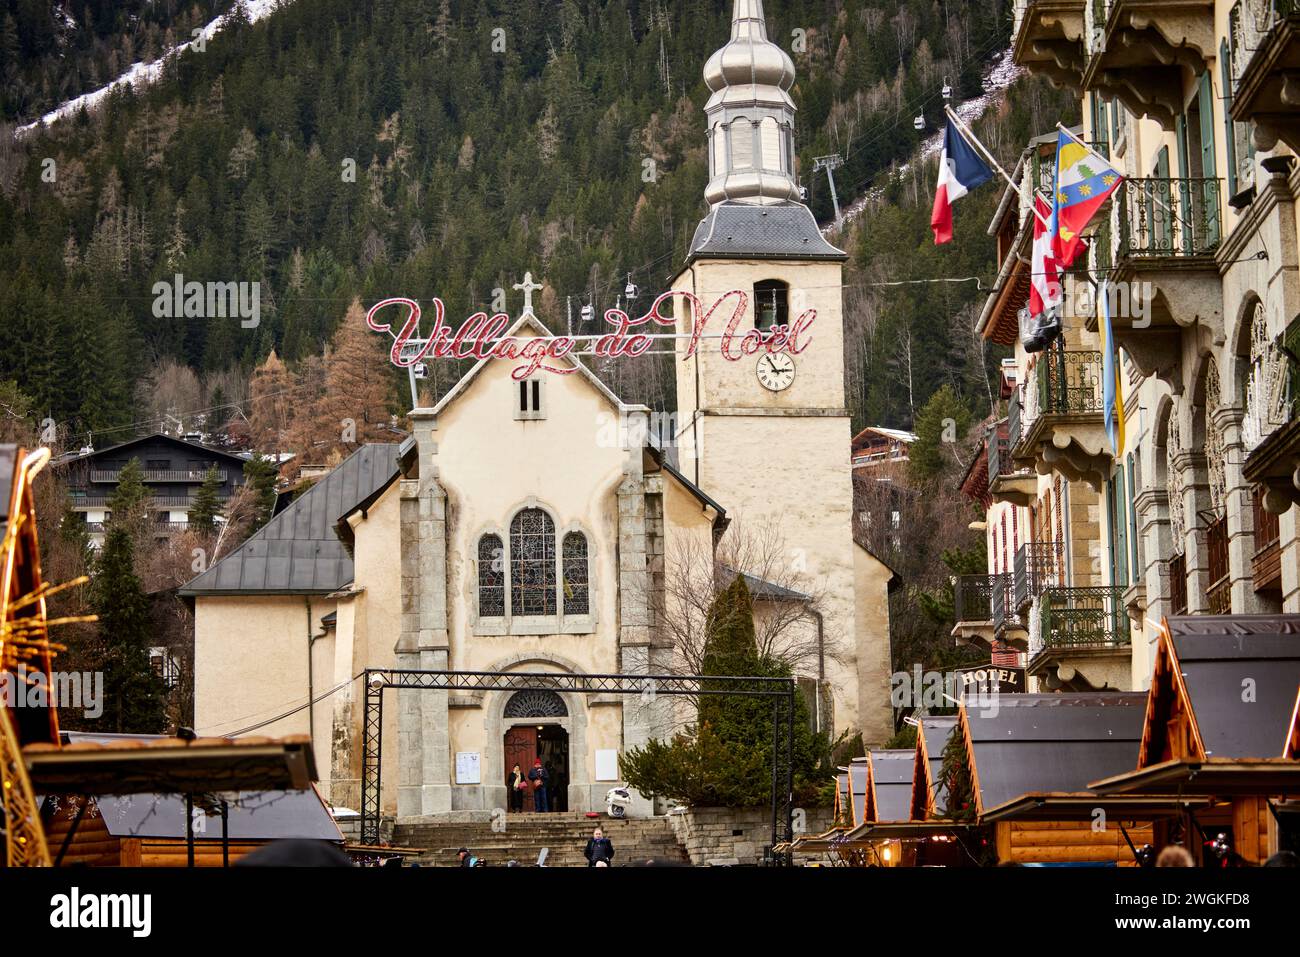 Chamonix Mont Blanc, Francia. Village de Neol chalet in legno, area del mercato di Natale incorniciata dalla chiesa di San Bernardo del Monte bianco di Paroisse Foto Stock